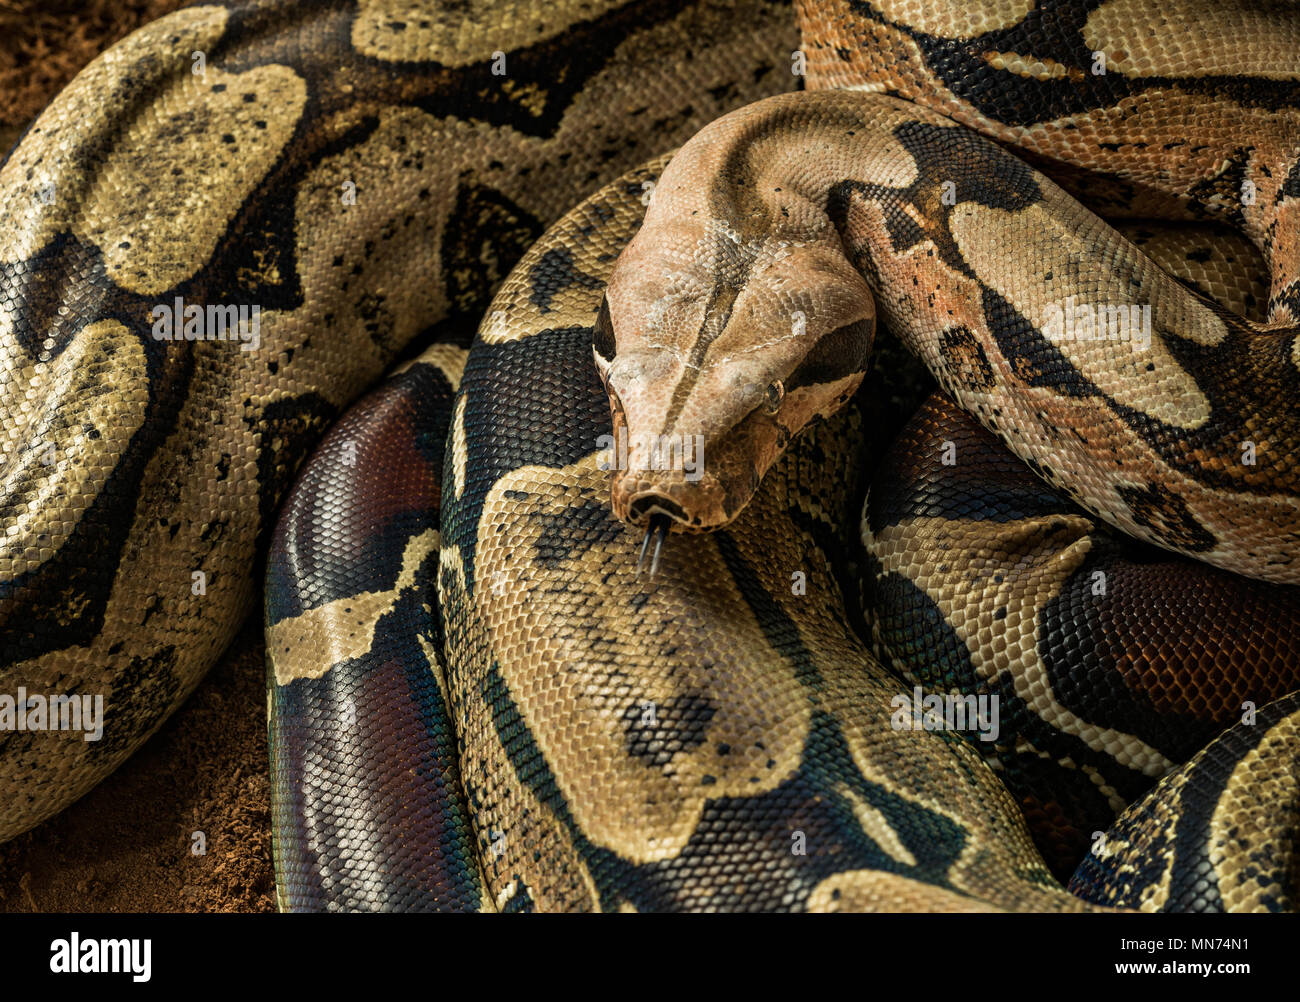 Maschio di Boa Constrictor constrictor - Suriname Guyana. Boa mostra la sua lingua Foto Stock